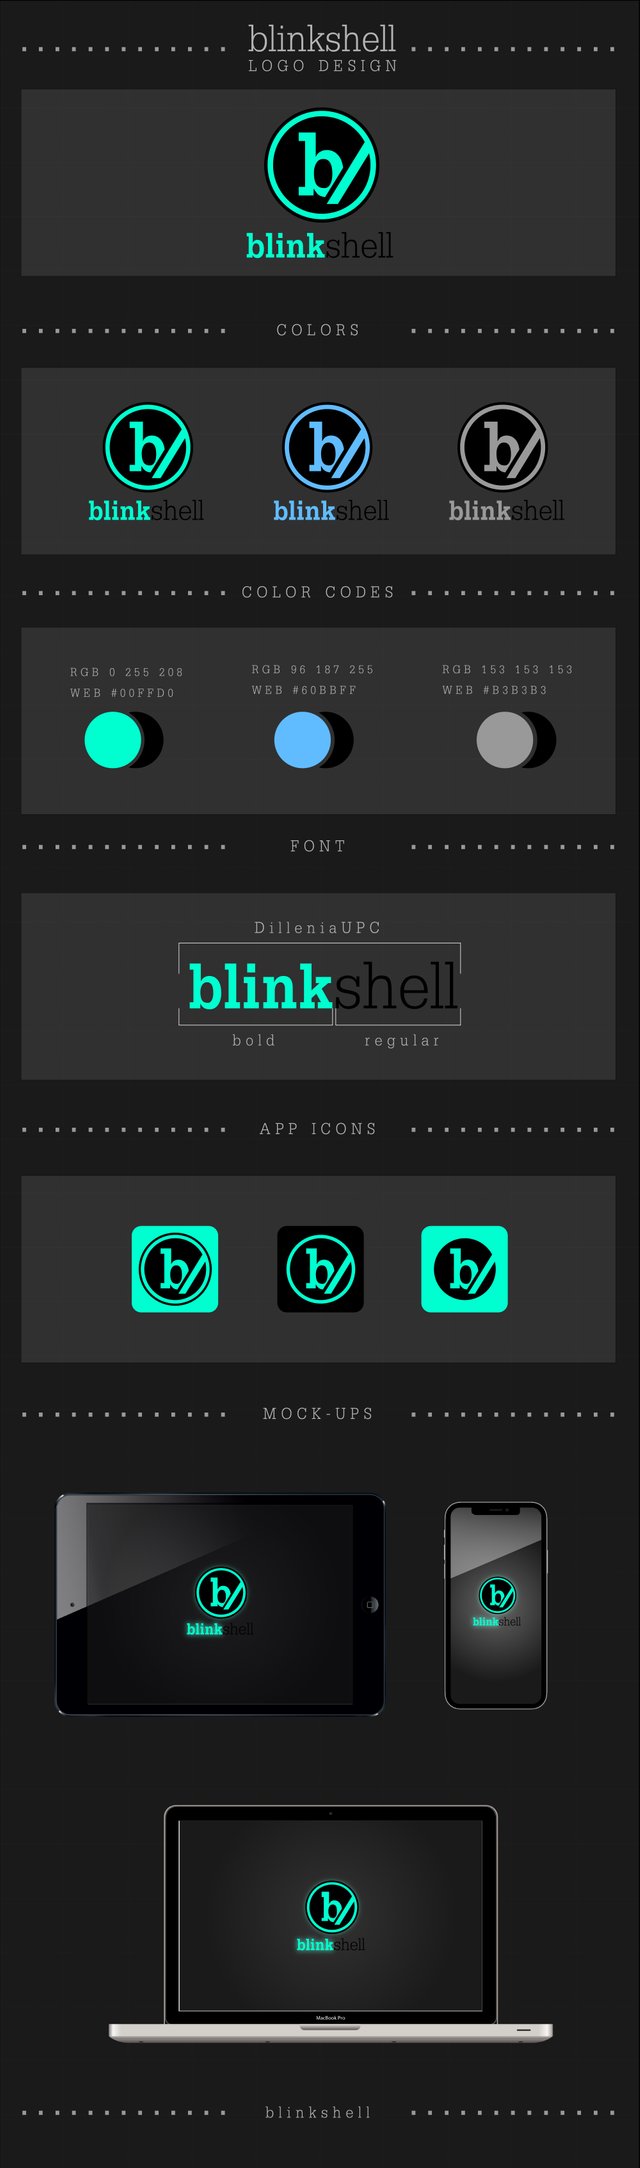 BlinkShell Logo Design-02.jpg